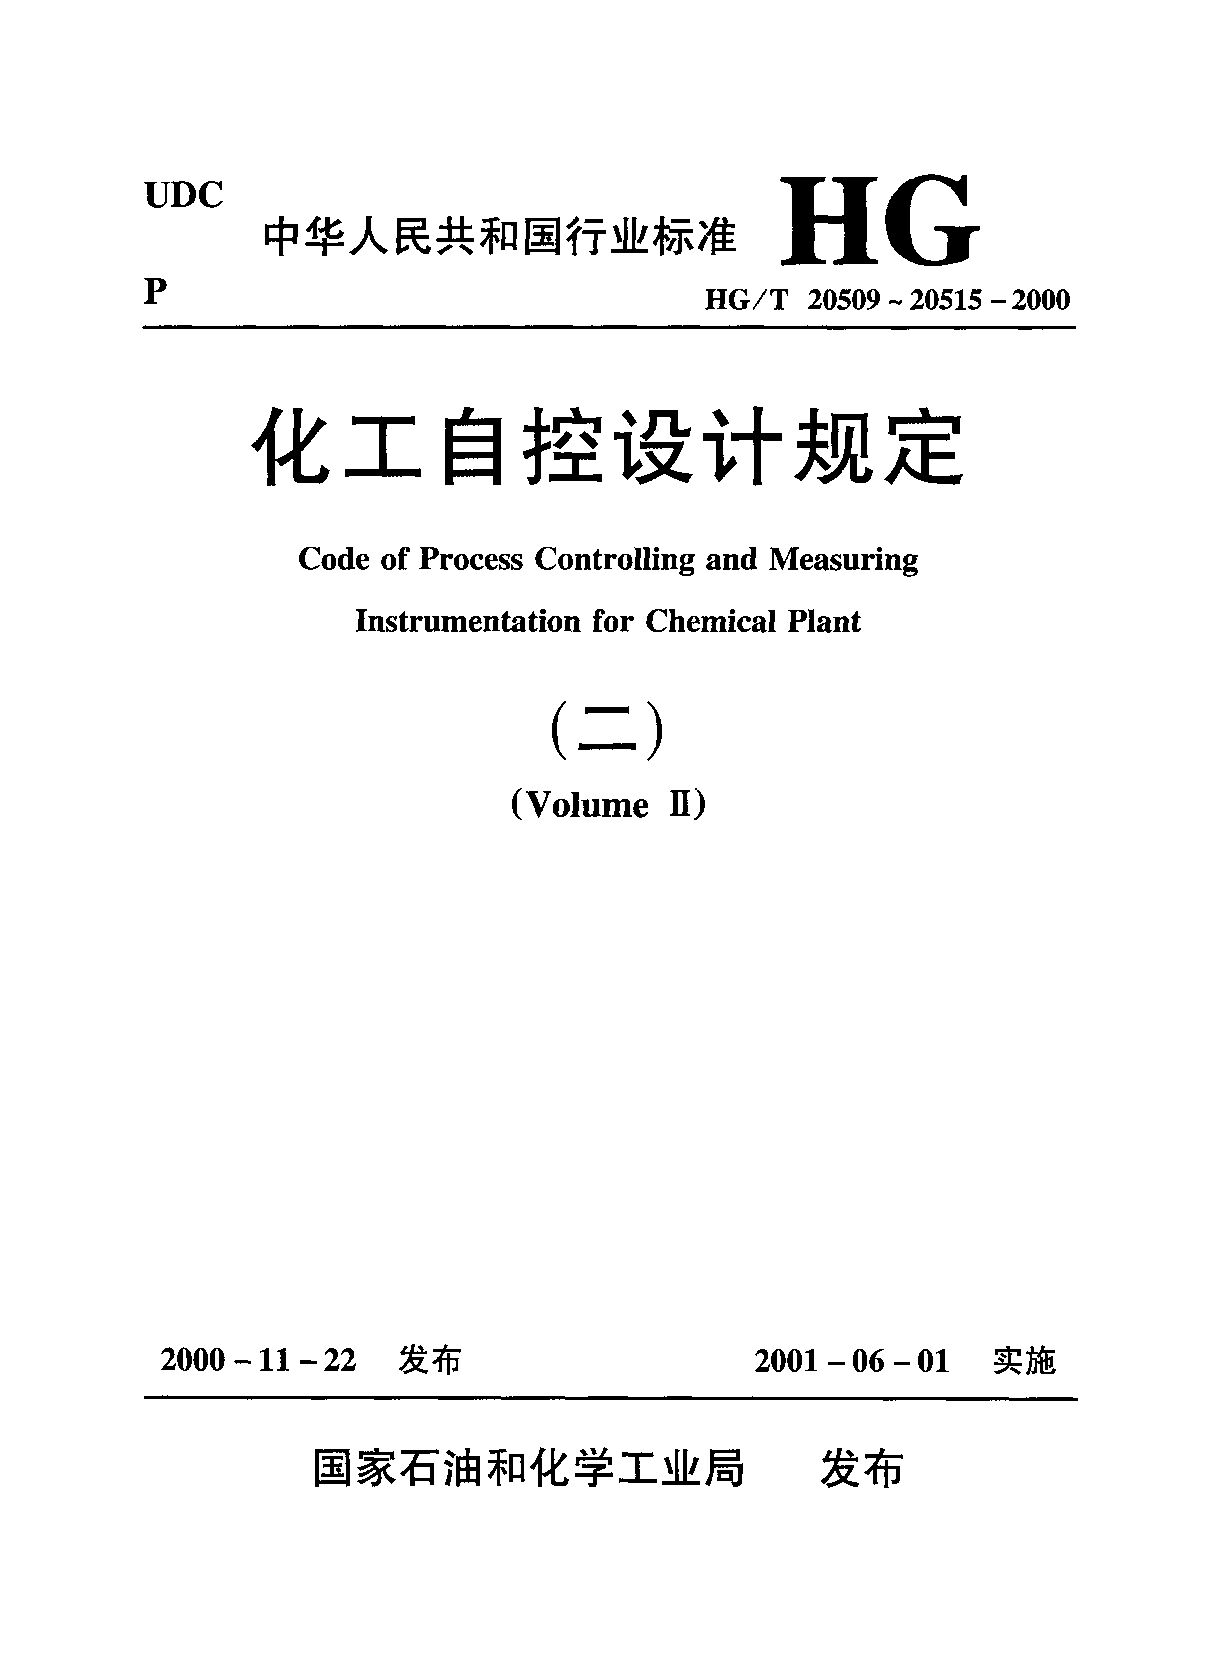 HG/T 20515-2000